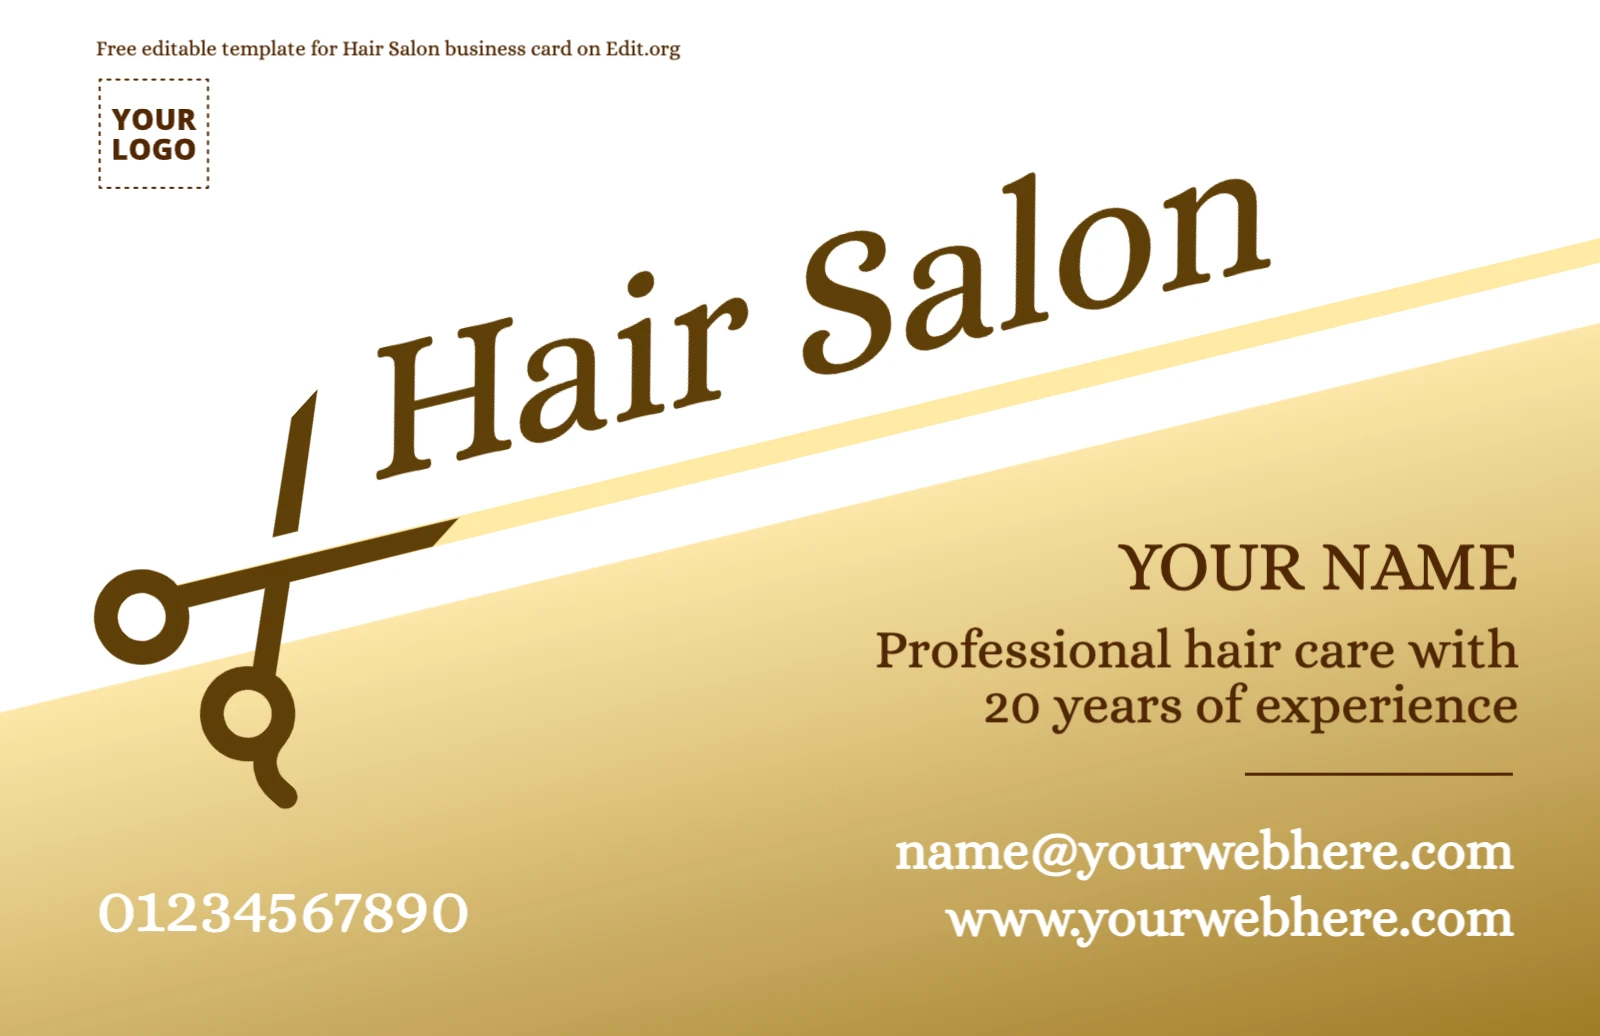 Custom Hair Stylist business card ideas to print